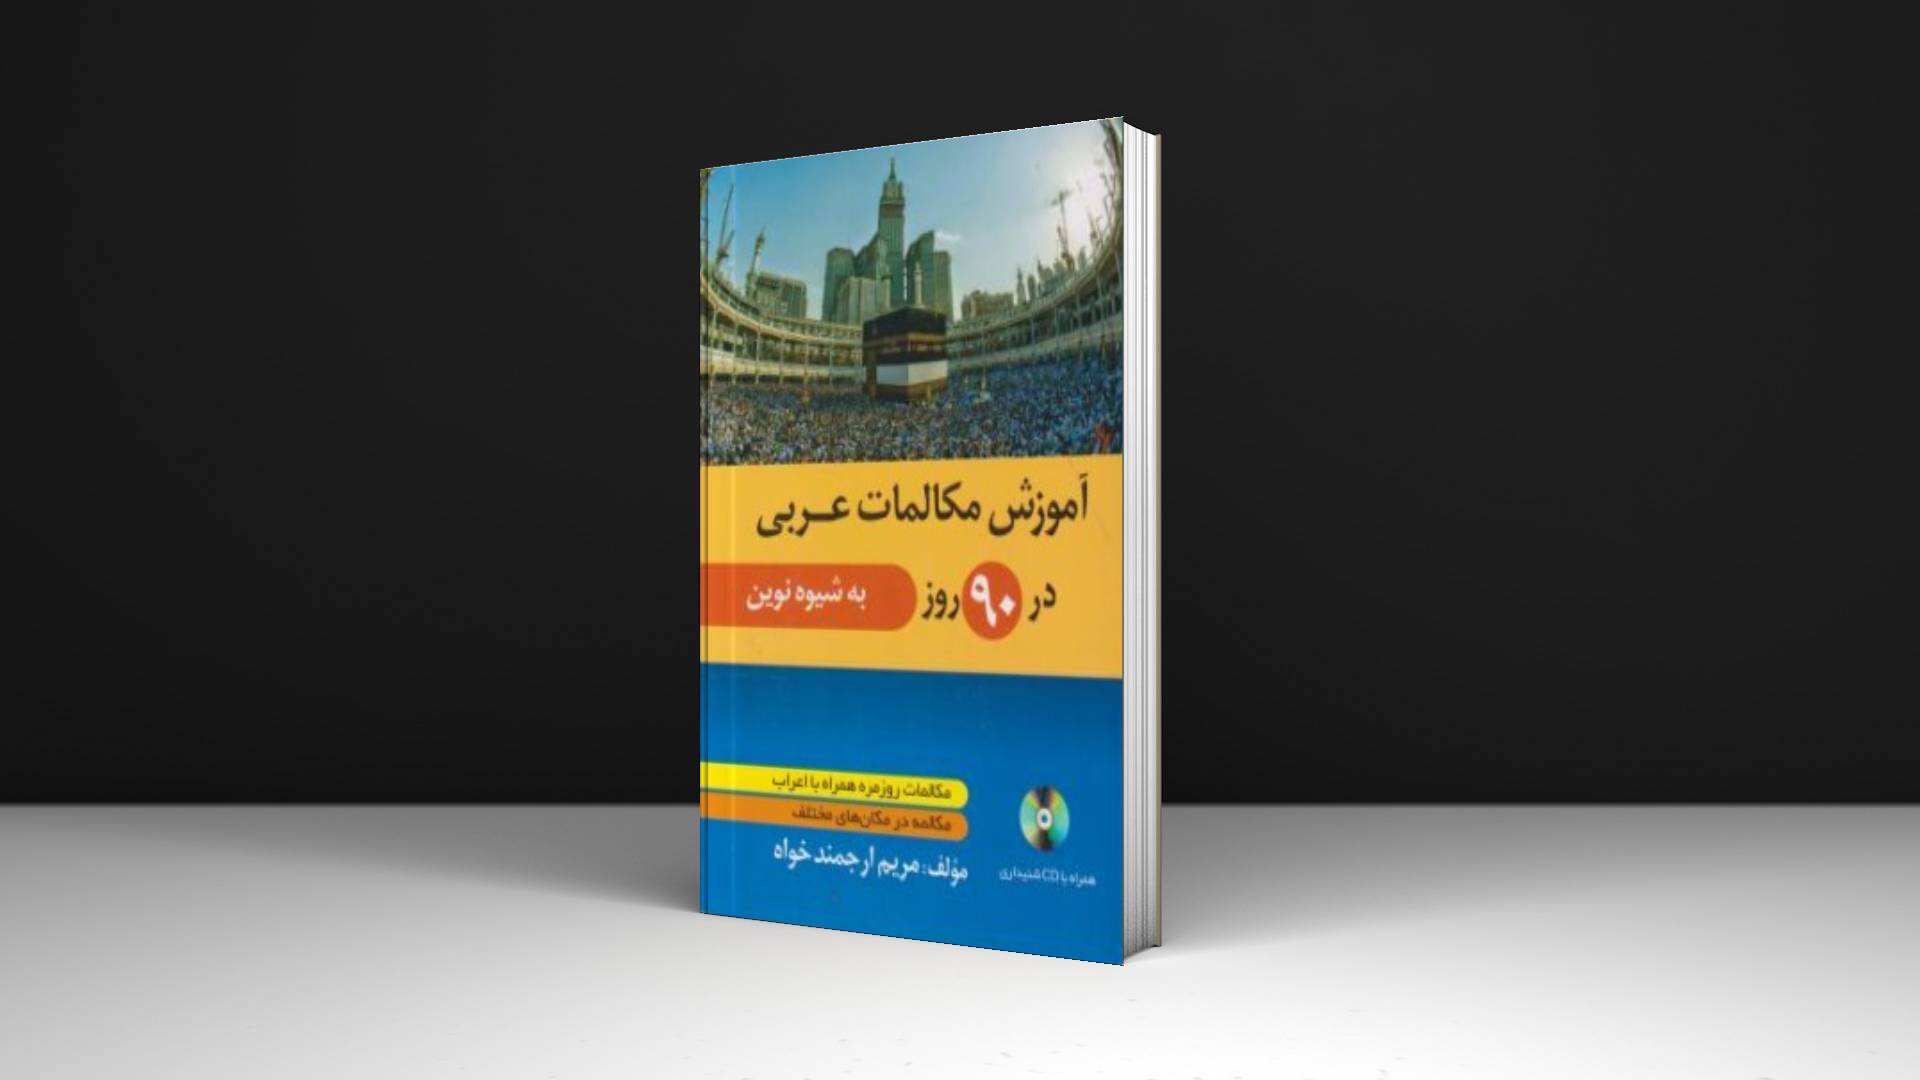 خرید کتاب زبان | زبان استور | کتاب خودآموز زبان عربی | آموزش مکالمات عربی در 90 روز به شیوه نوین